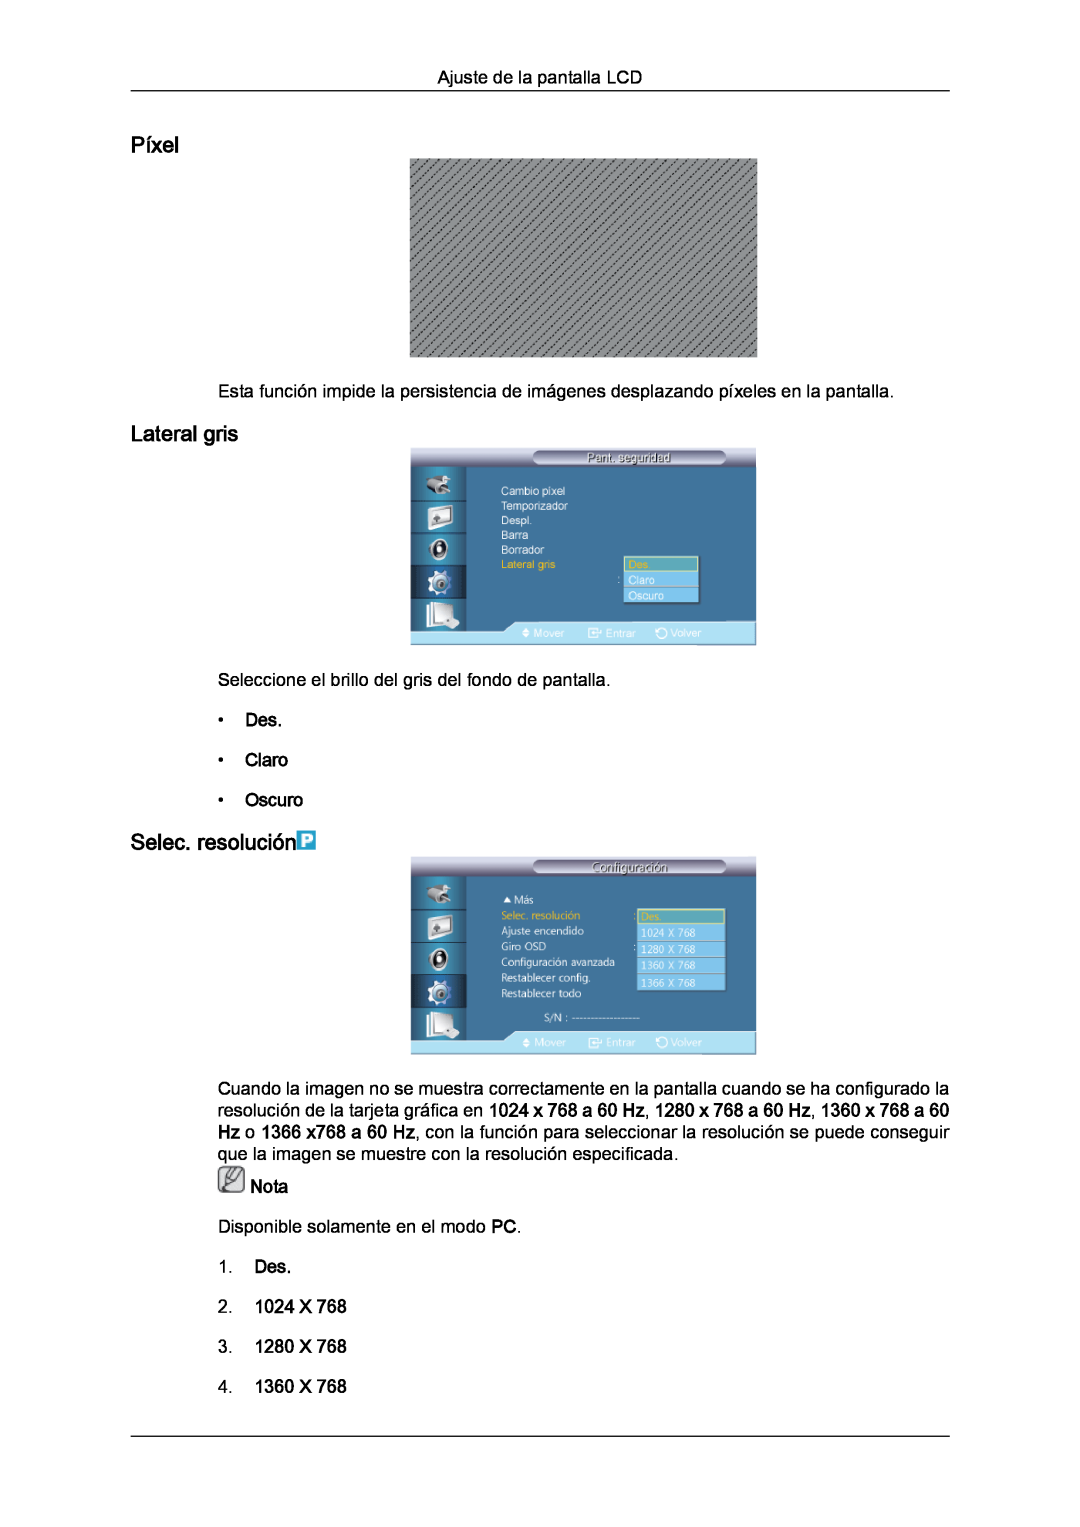 Samsung LH40CRPMBC/EN Píxel, Lateral gris, Selec. resolución, Des Claro Oscuro, Des 2. 1024 X 3. 1280 X 4. 1360 X, Nota 